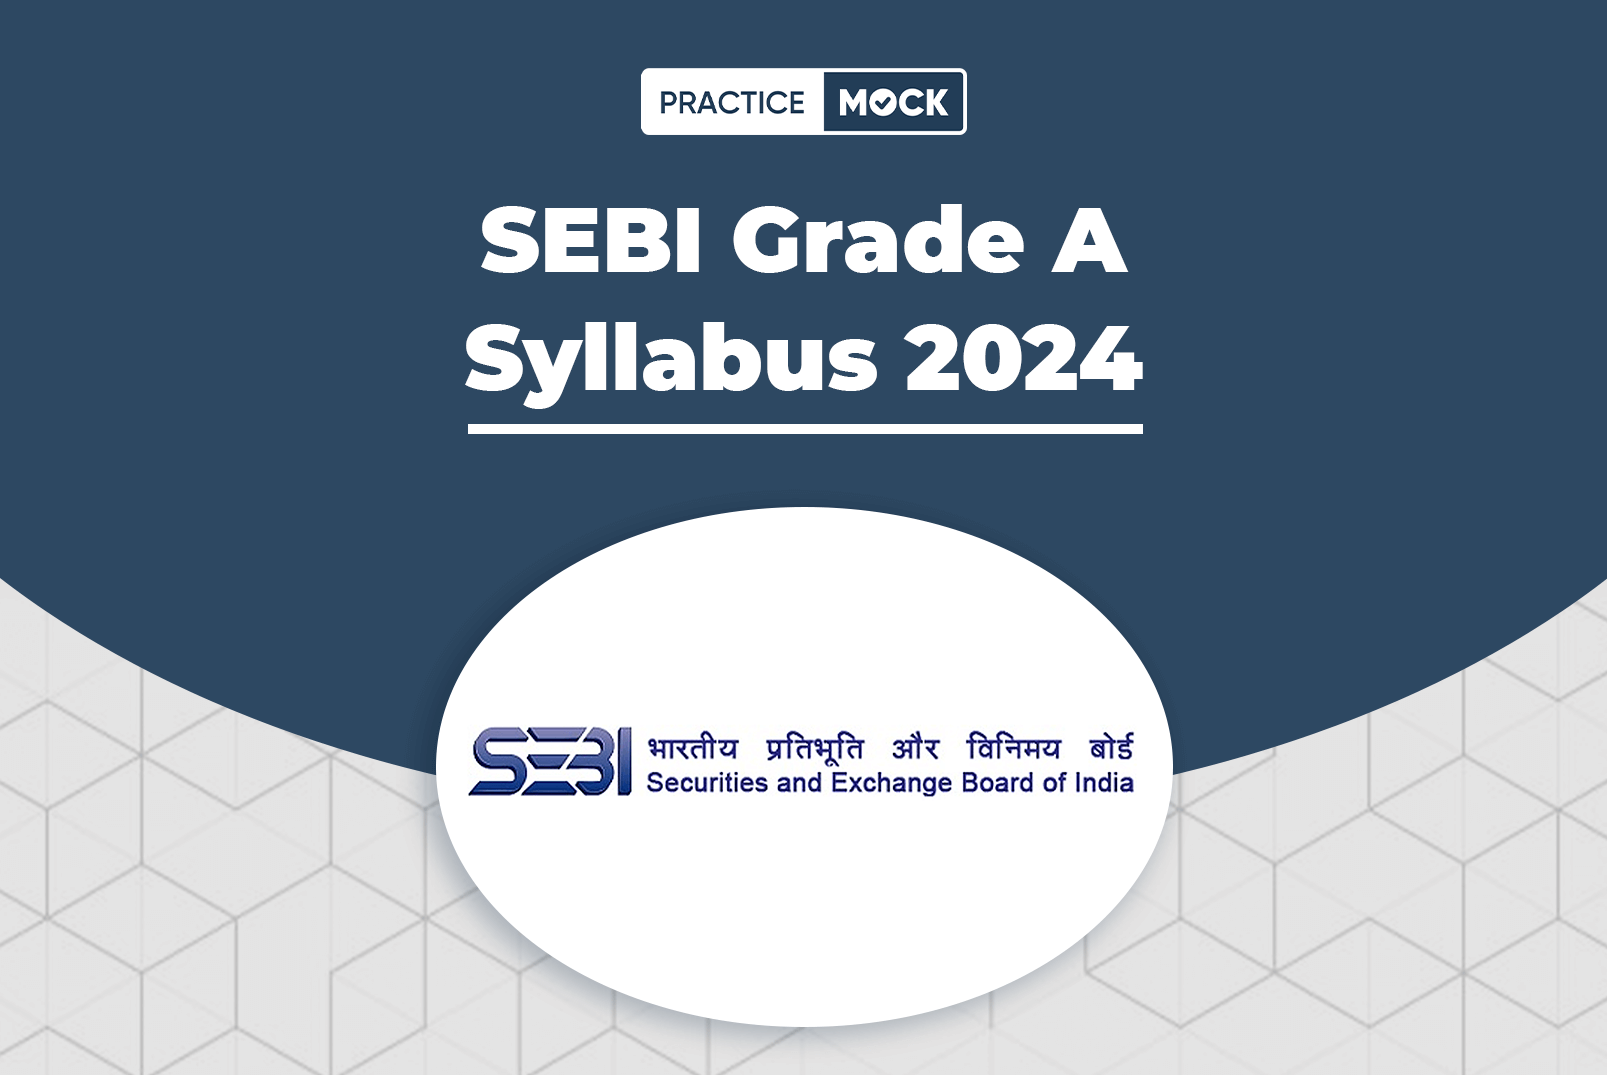 SEBI Grade A Syllabus 2024, Check Phase 1 & 2 Syllabus Topics